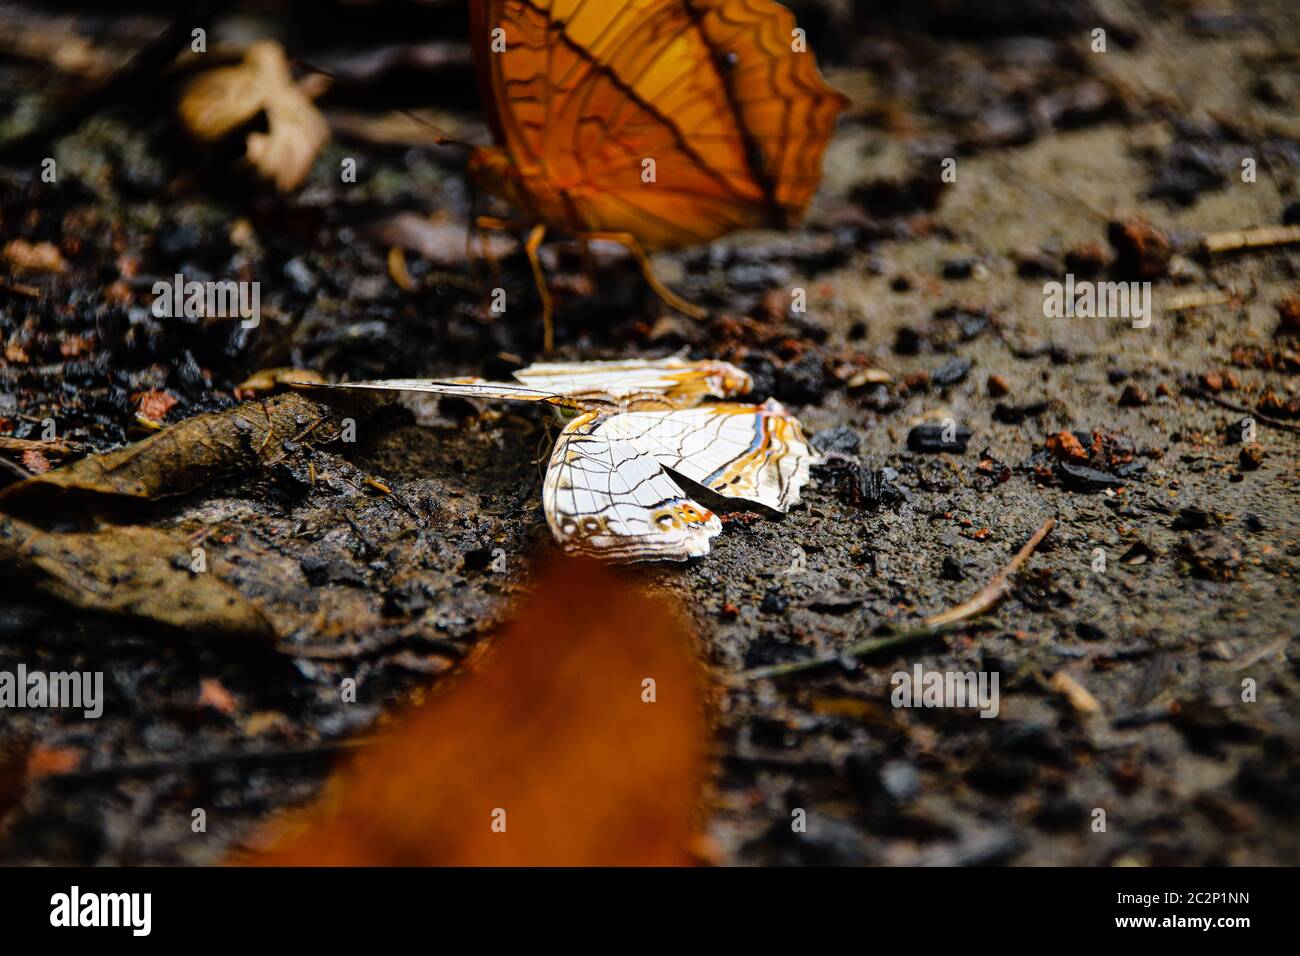 Una farfalla morta sul terreno che mostra il concetto di equilibrio tra vita e morte in natura Foto Stock